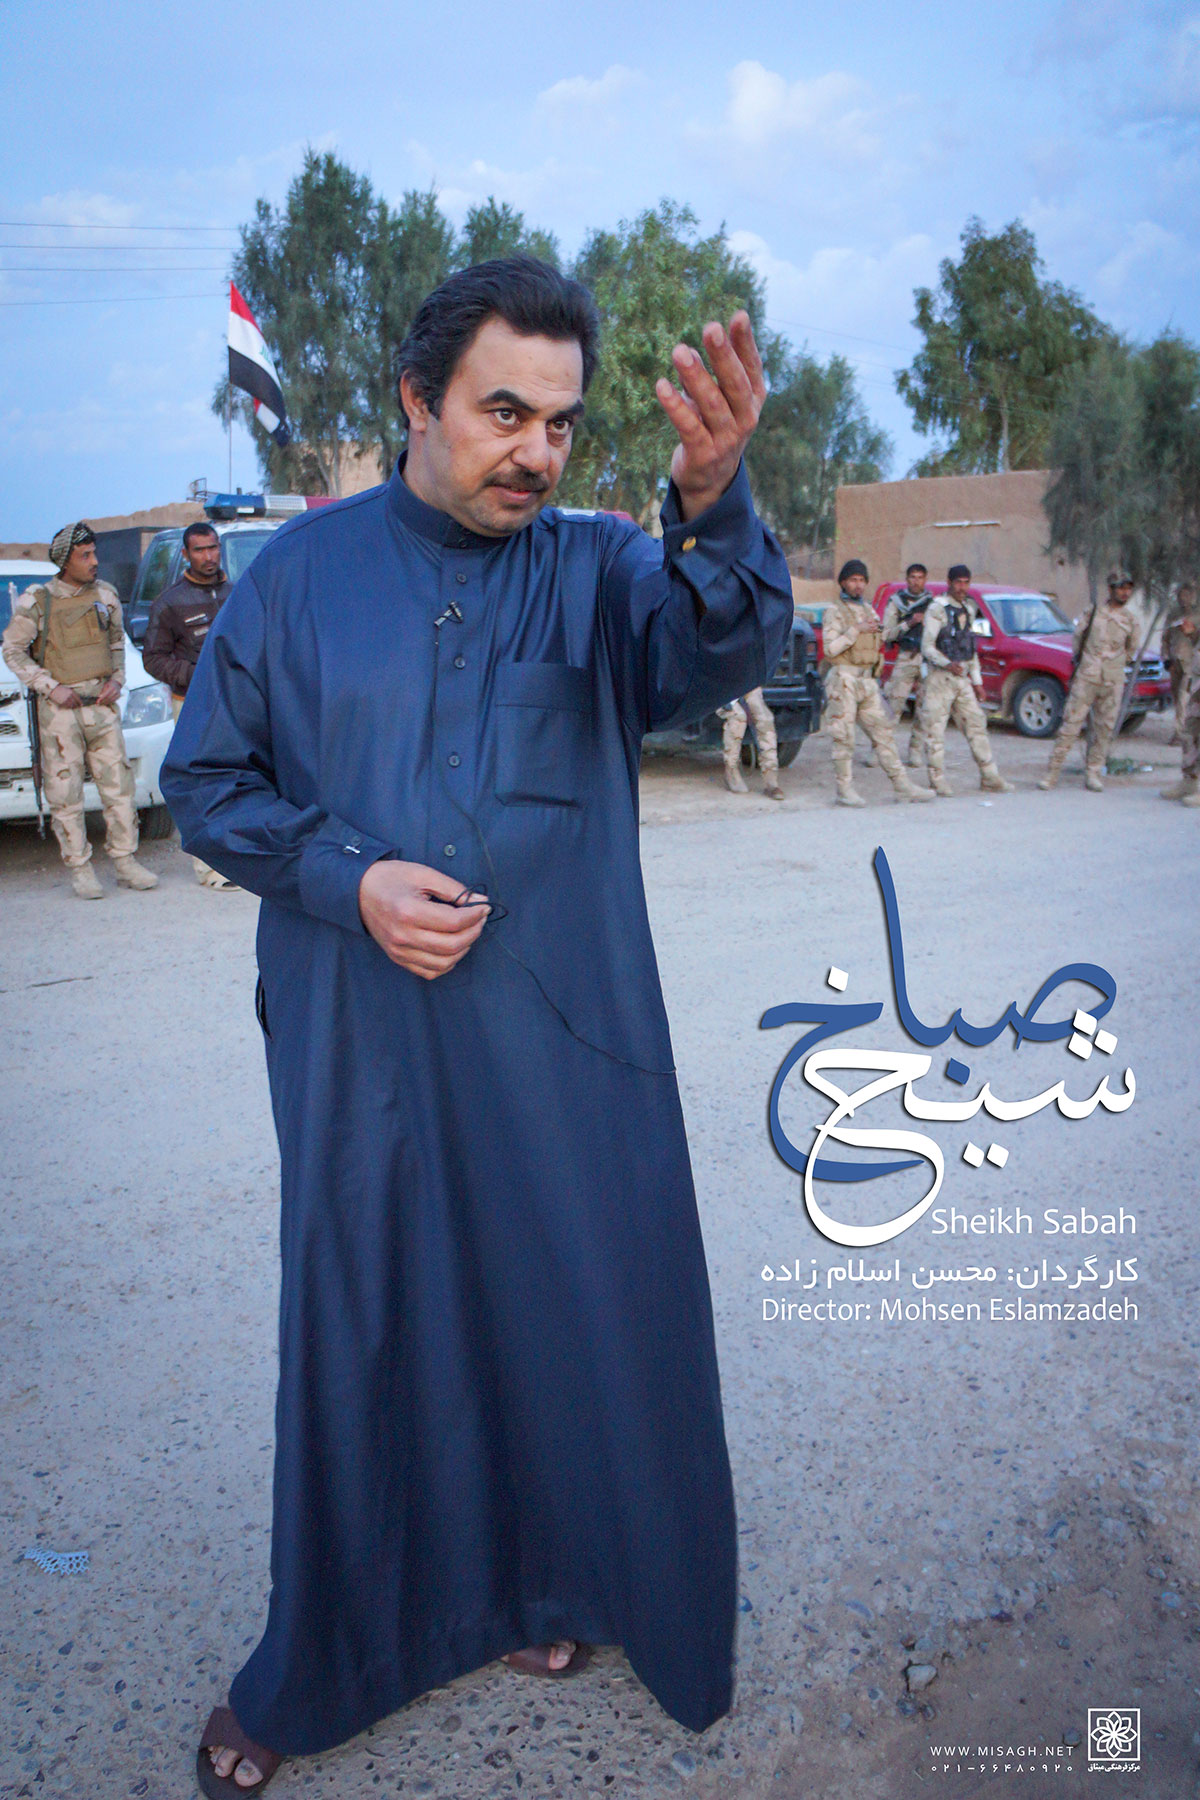 مستند "شیخ صباح"، بزرگ قبیله اهل سنتی که با داعش مبارزه می کنند